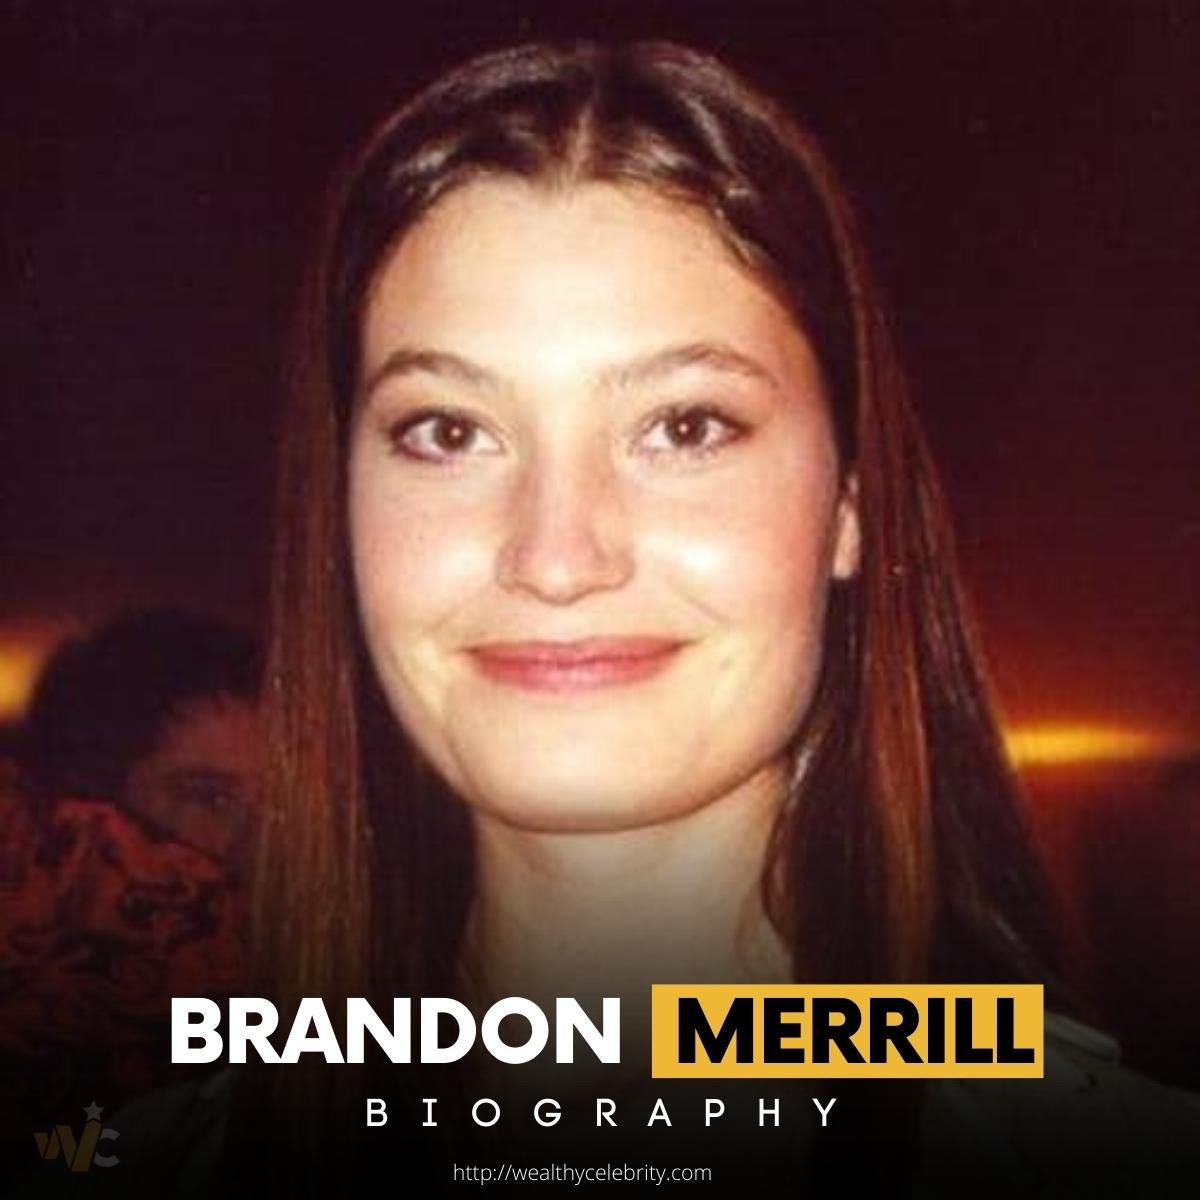 Brandon Merrill